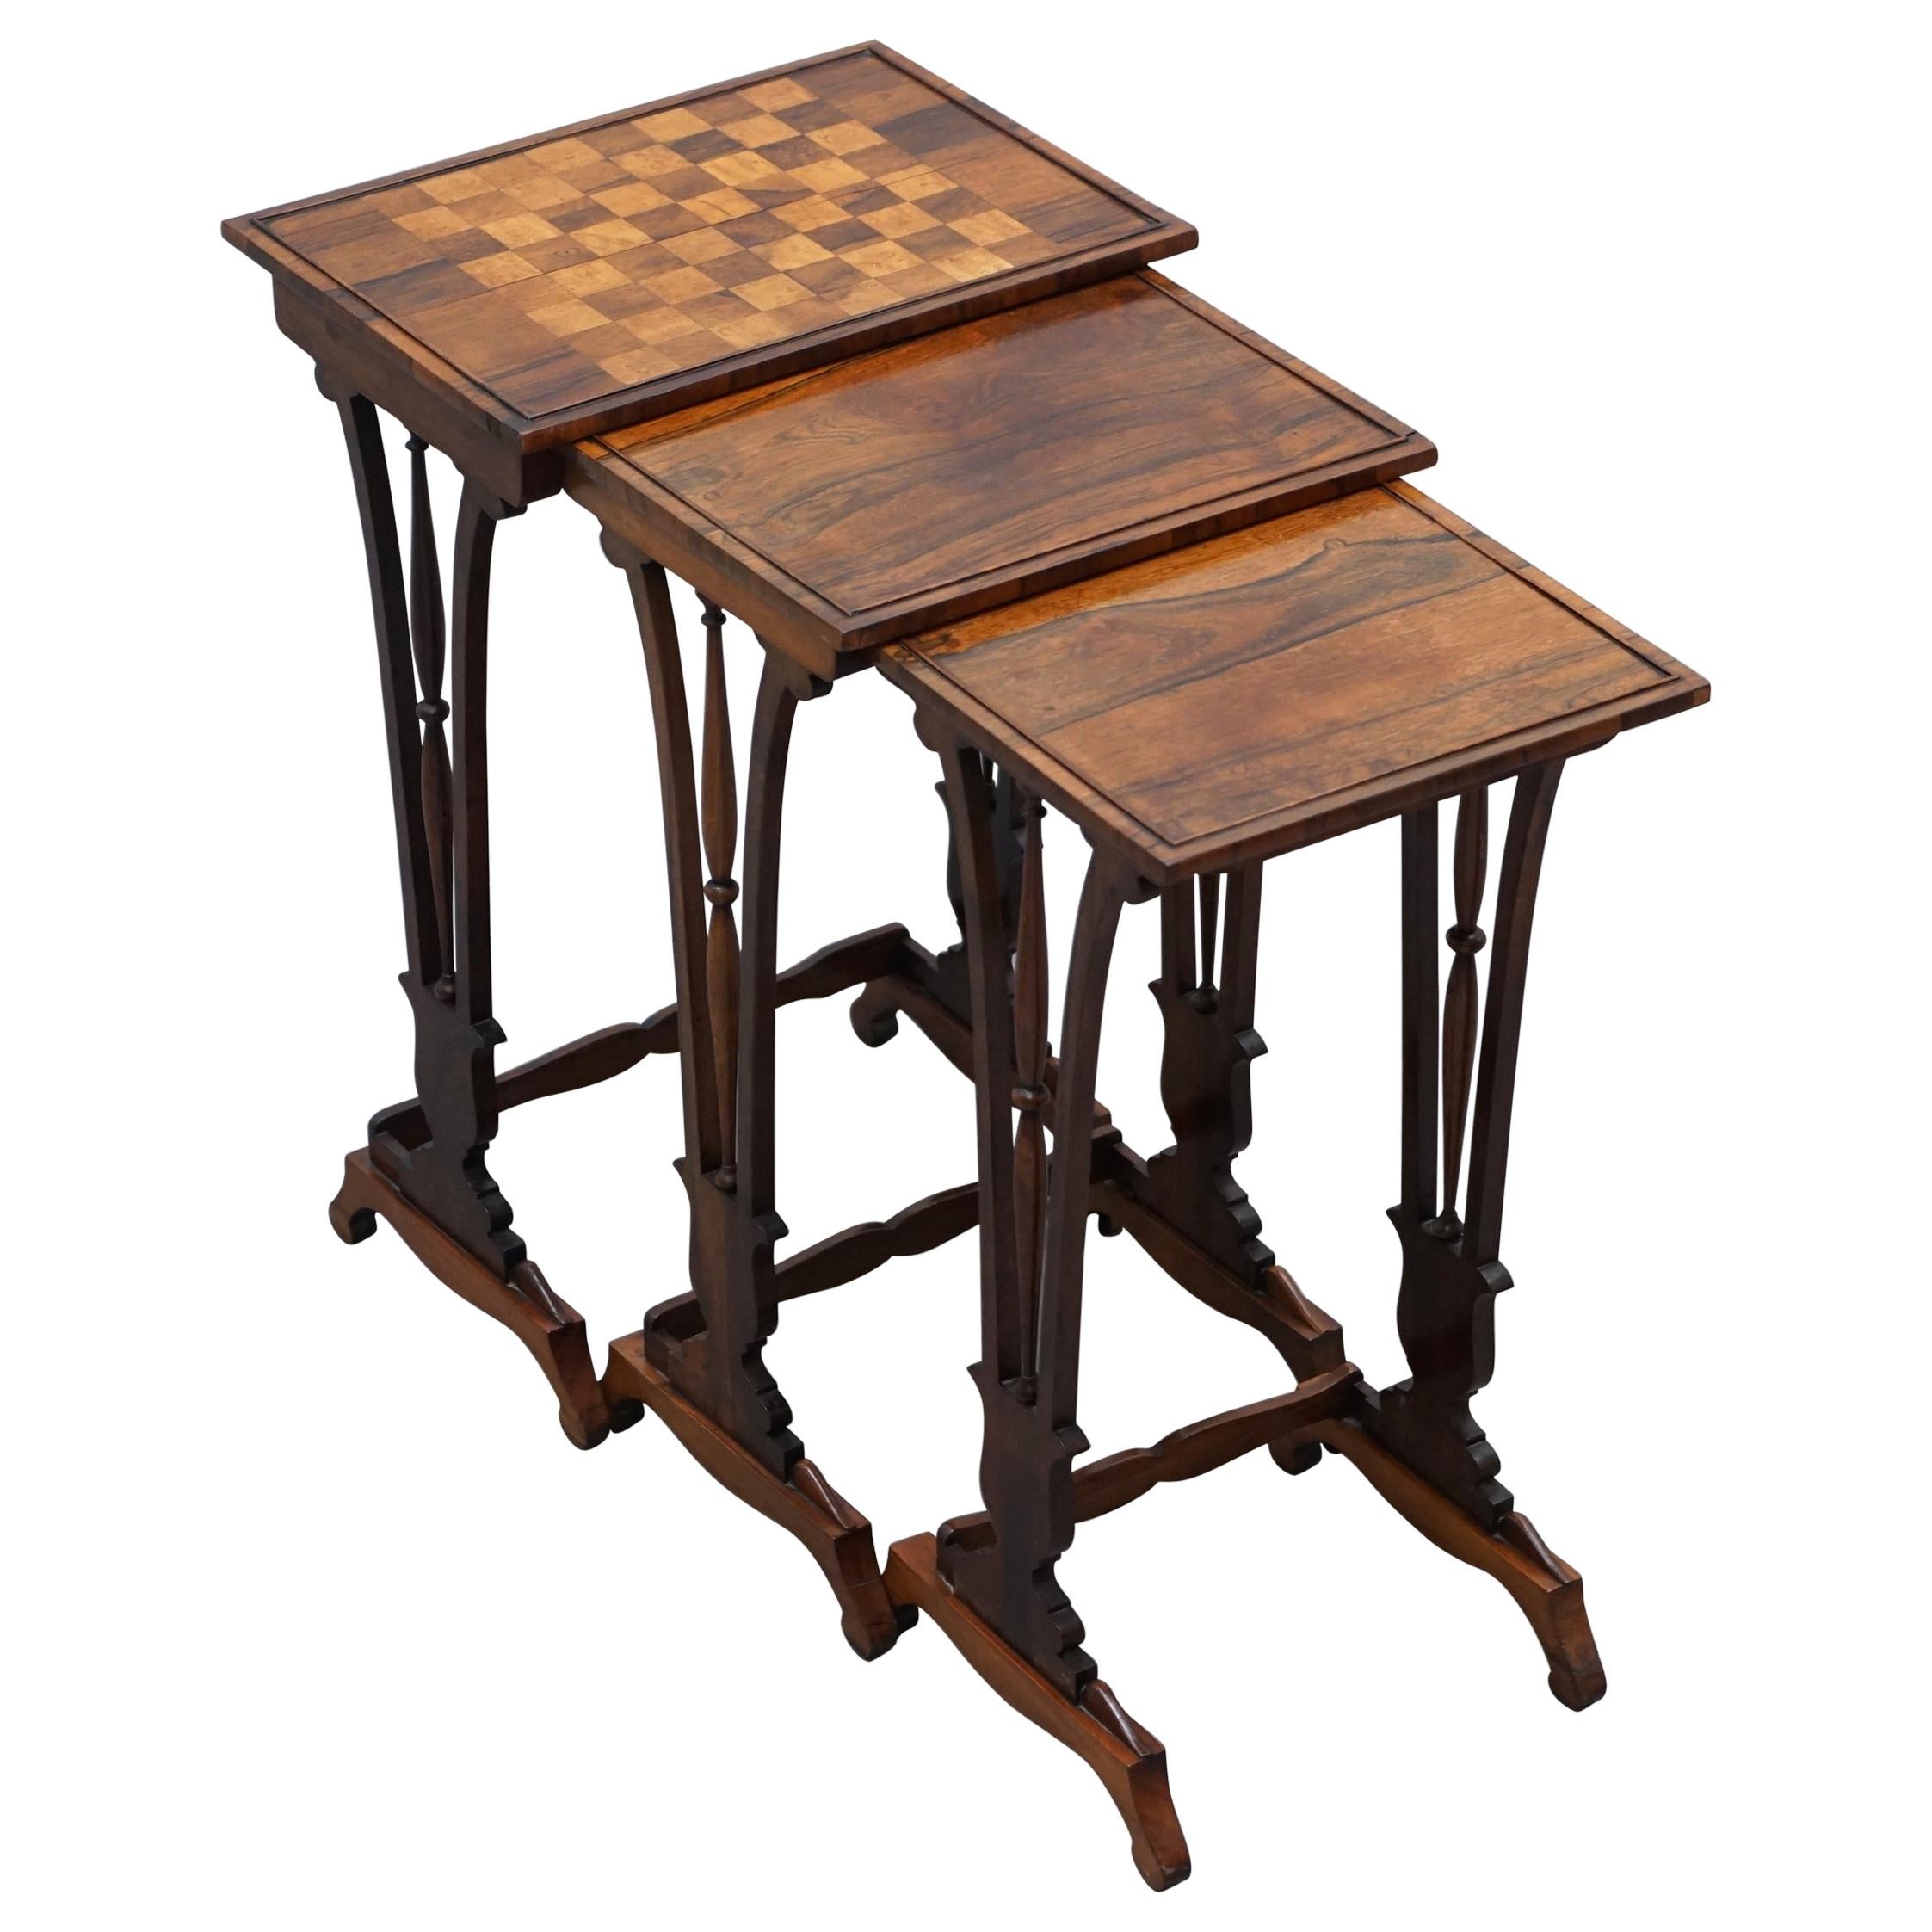 Magnifique ensemble de tables Regency en bois de feuillus avec plateau en damier attribué à Gillows